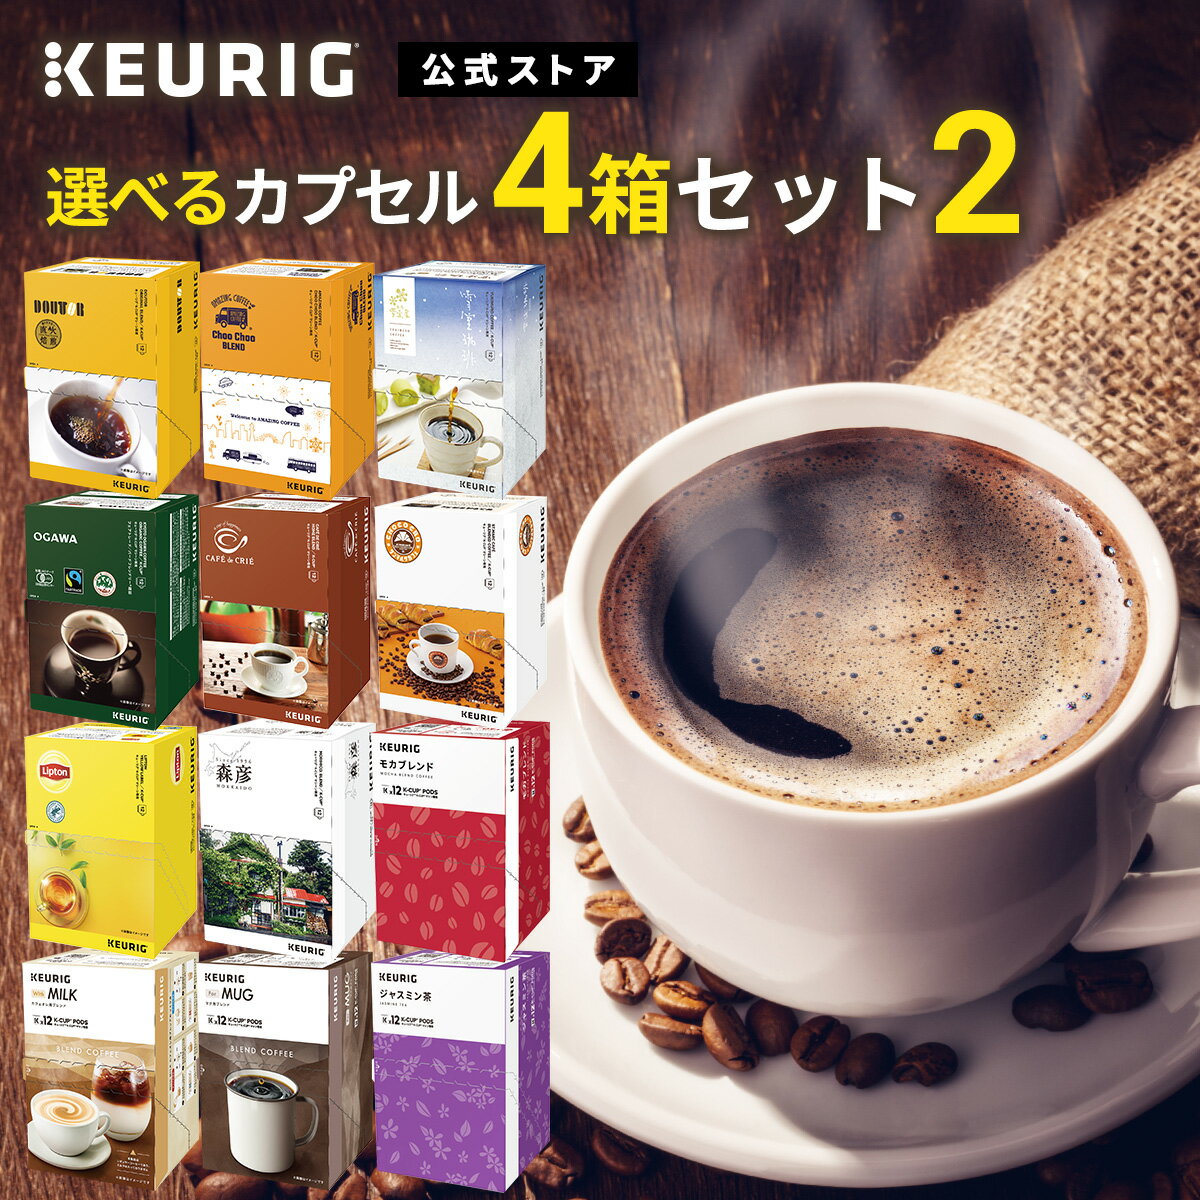 【公式】KEURIG 全12種類から「選べるカプセル4箱セット2」 48杯分 K-Cup kcup Kカップ カプセル キューリグ コーヒー カプセル キューリグ